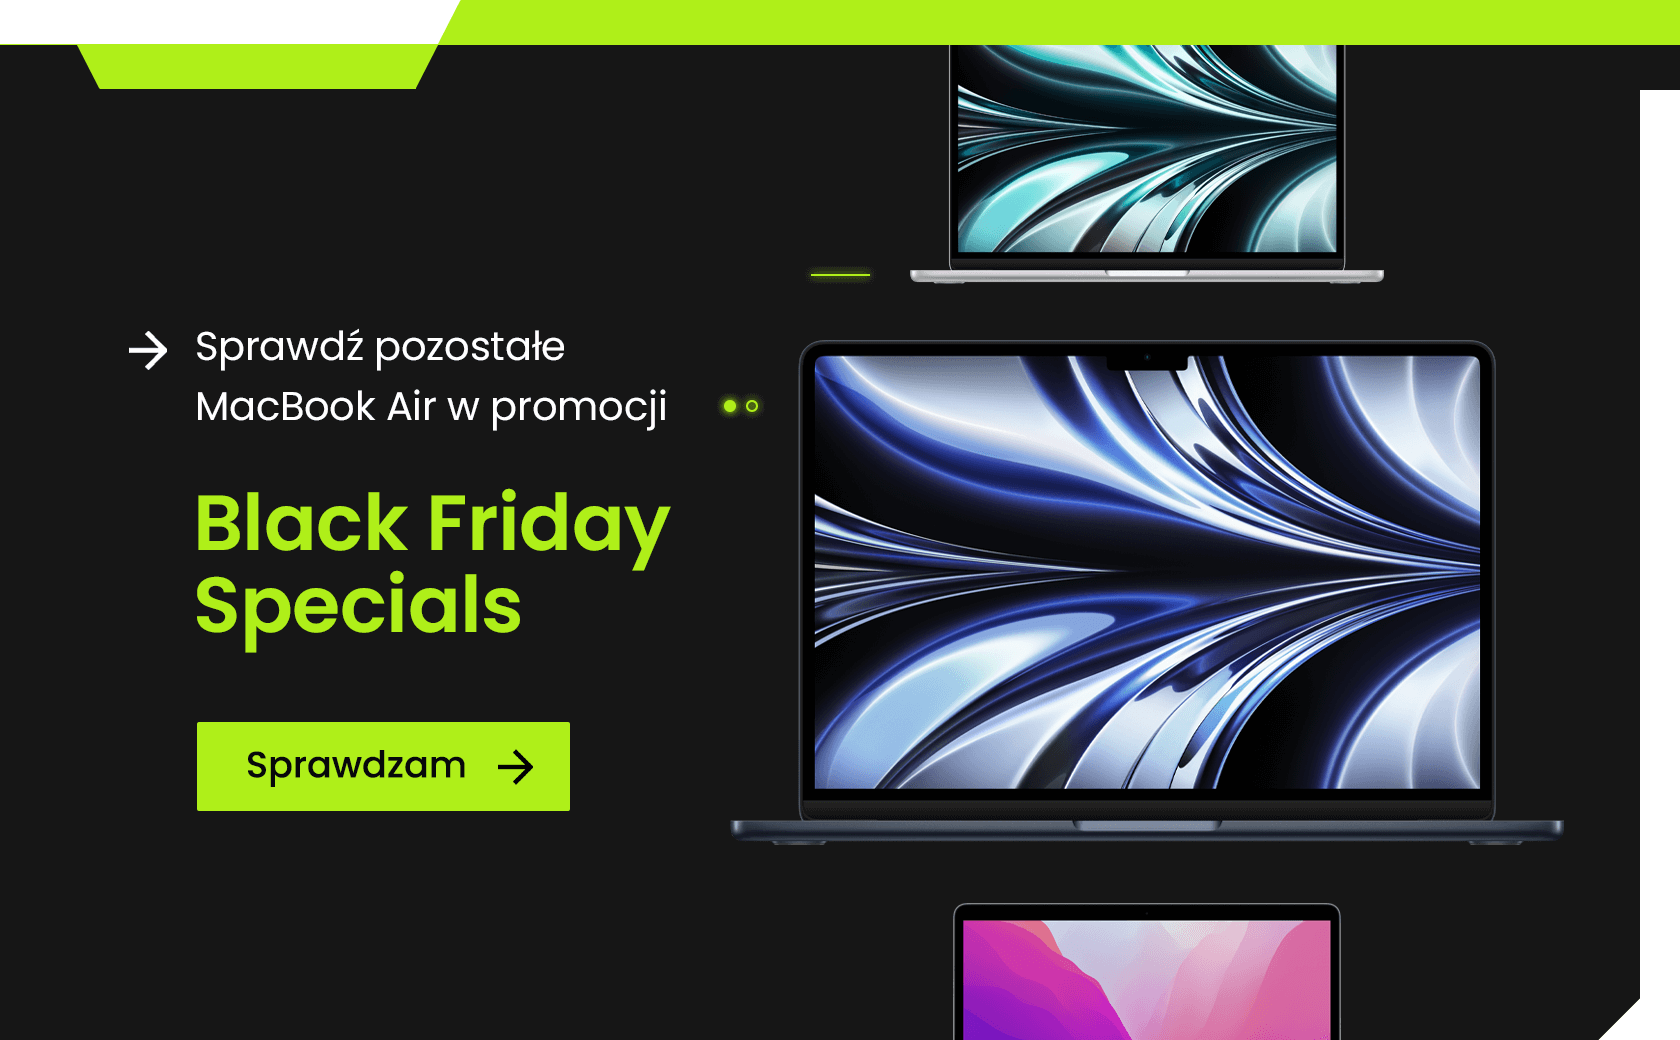 Black Friday Specials - MacBook Air